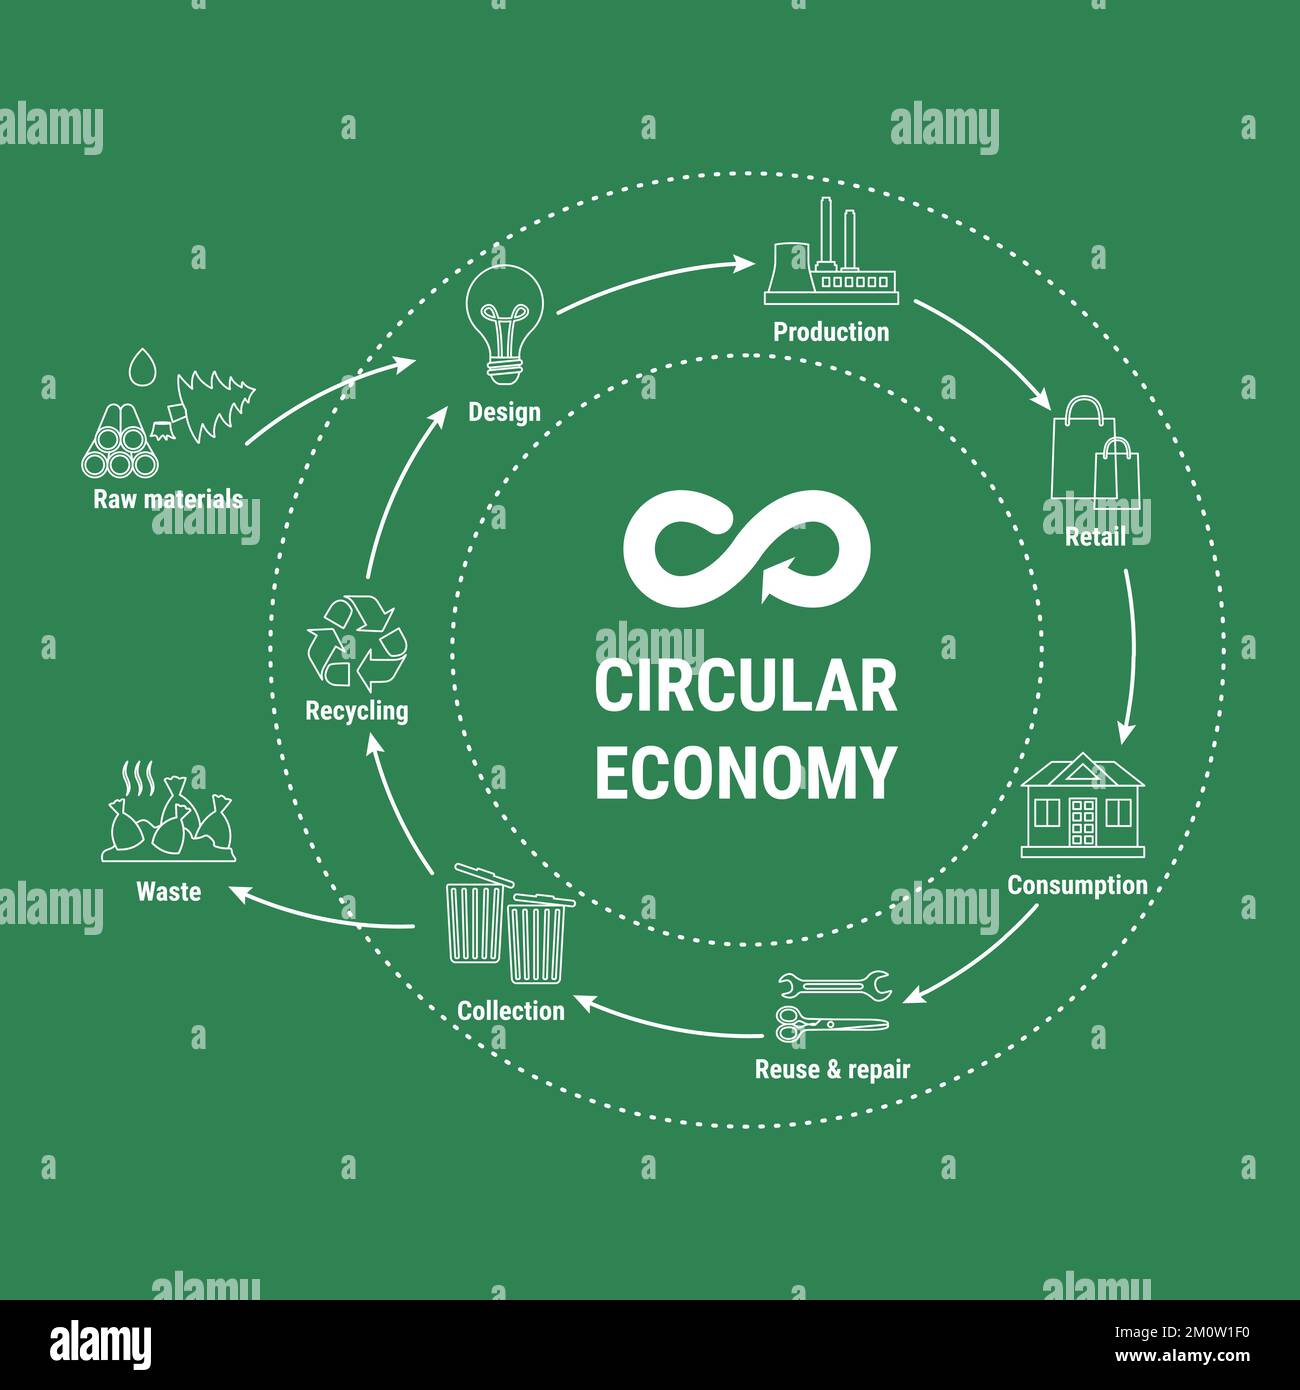 Infographie circulaire sur la ligne économique sur fond vert. Modèle commercial durable. Schéma du cycle de vie du produit de la matière première à la production, consu Illustration de Vecteur